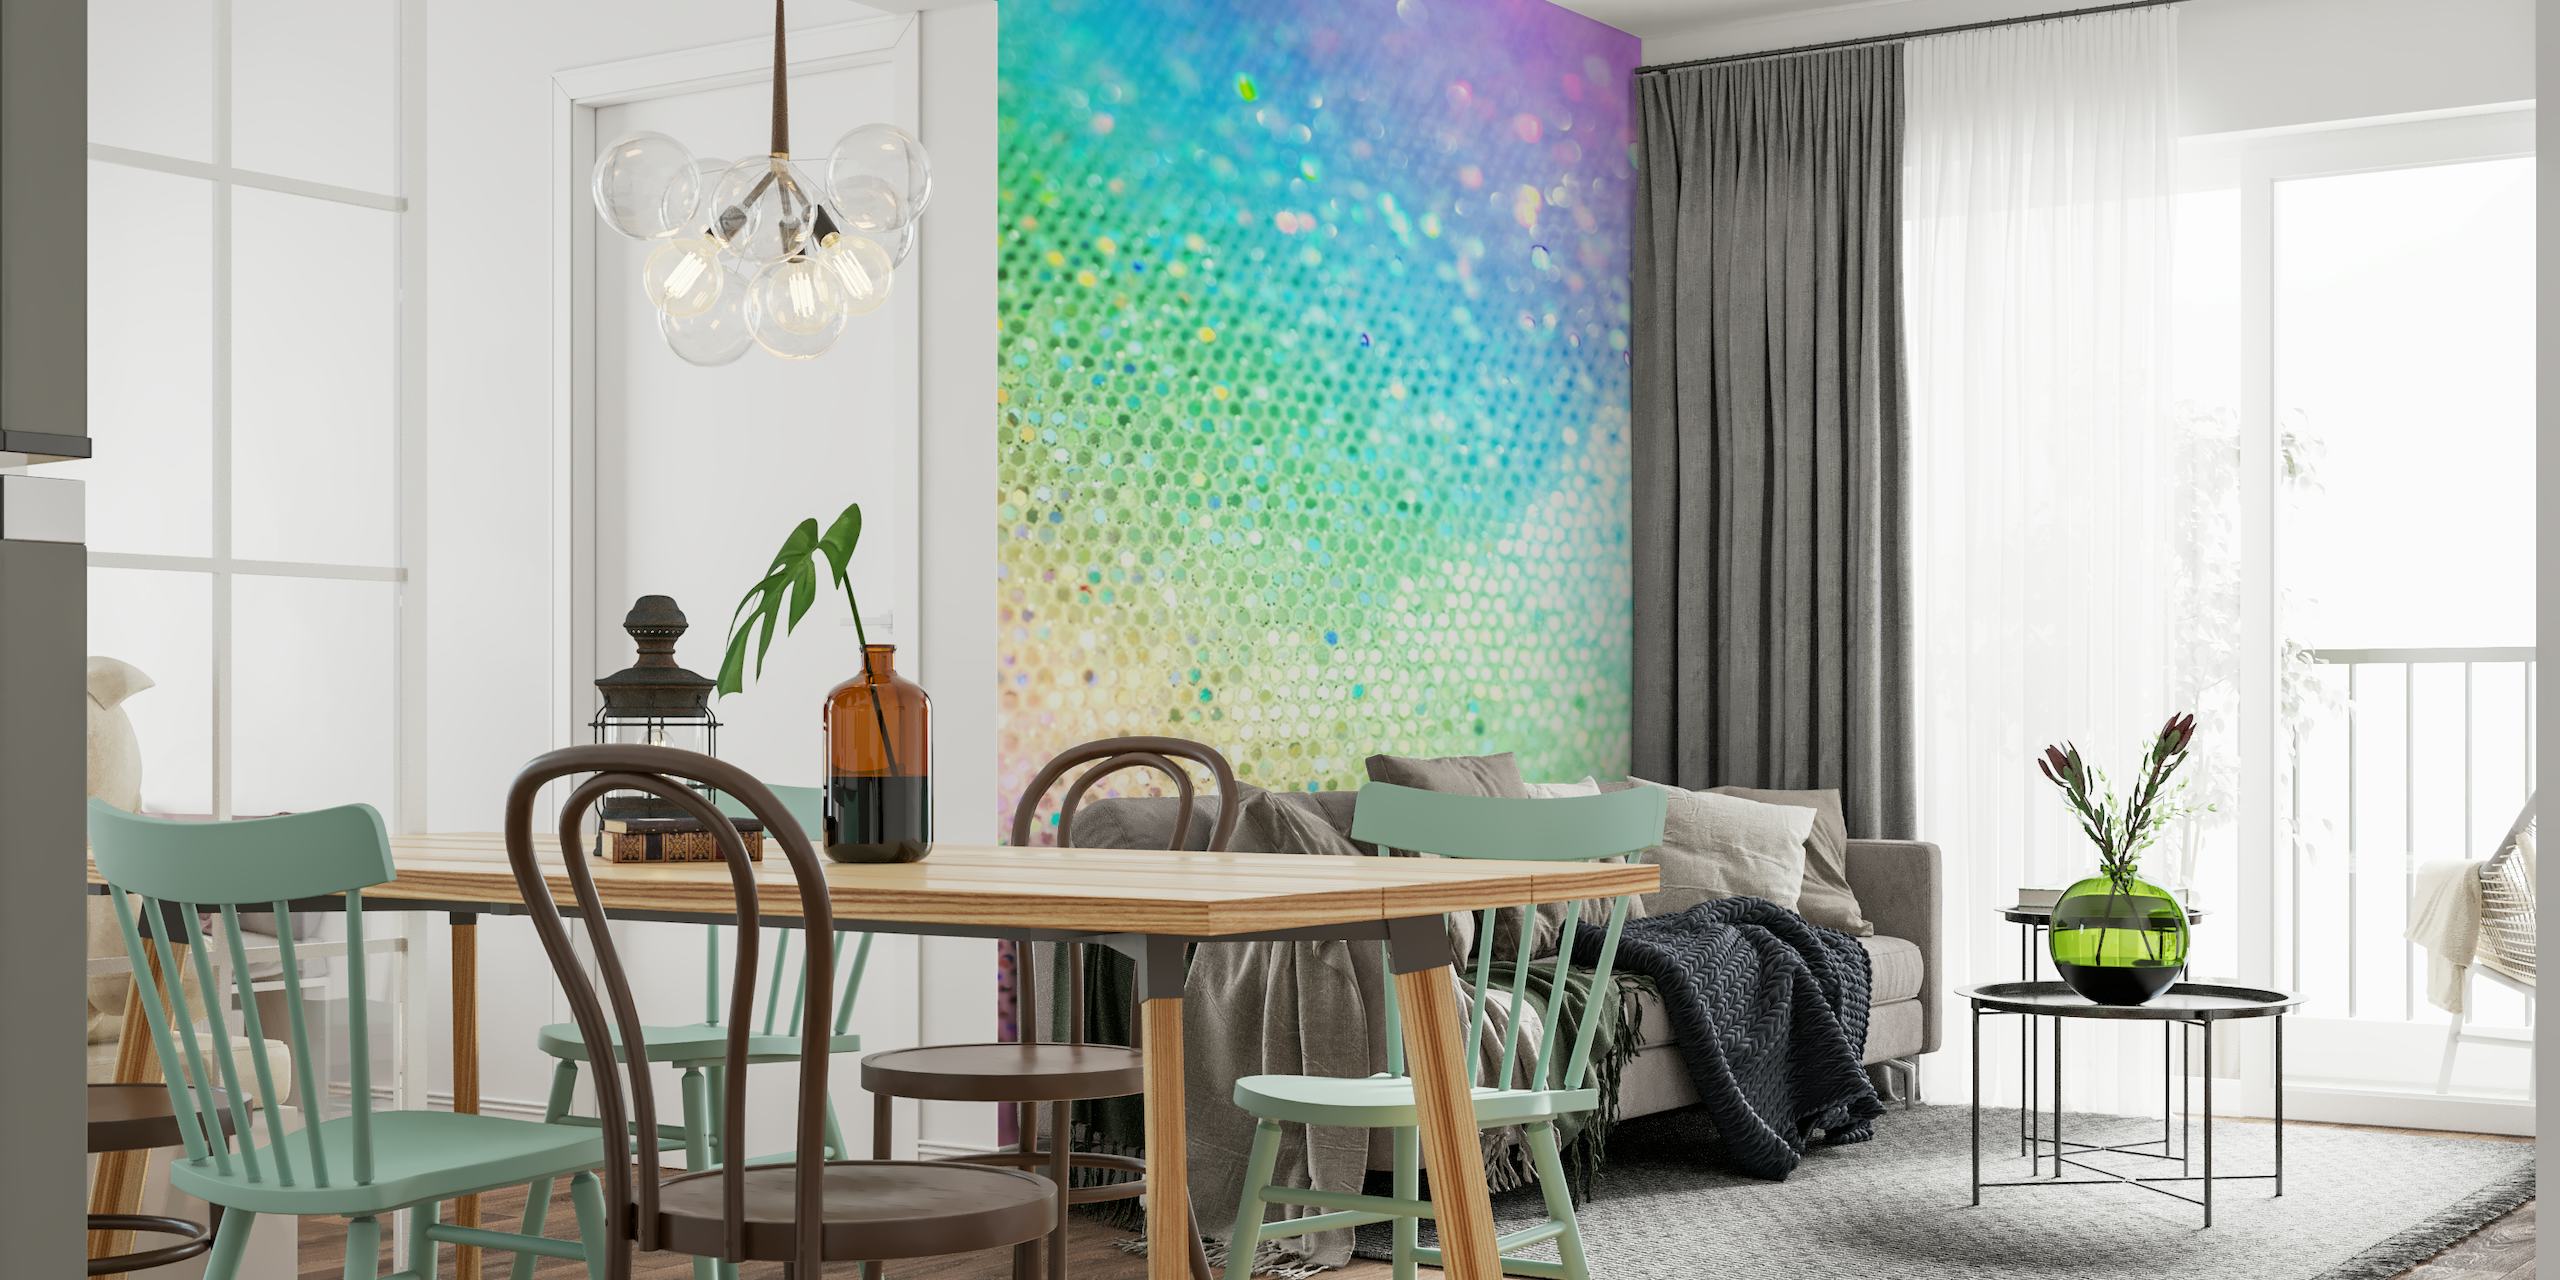 Een kleurrijke muurschildering met een verloop van sprankelende glitterstippen in regenboogtinten